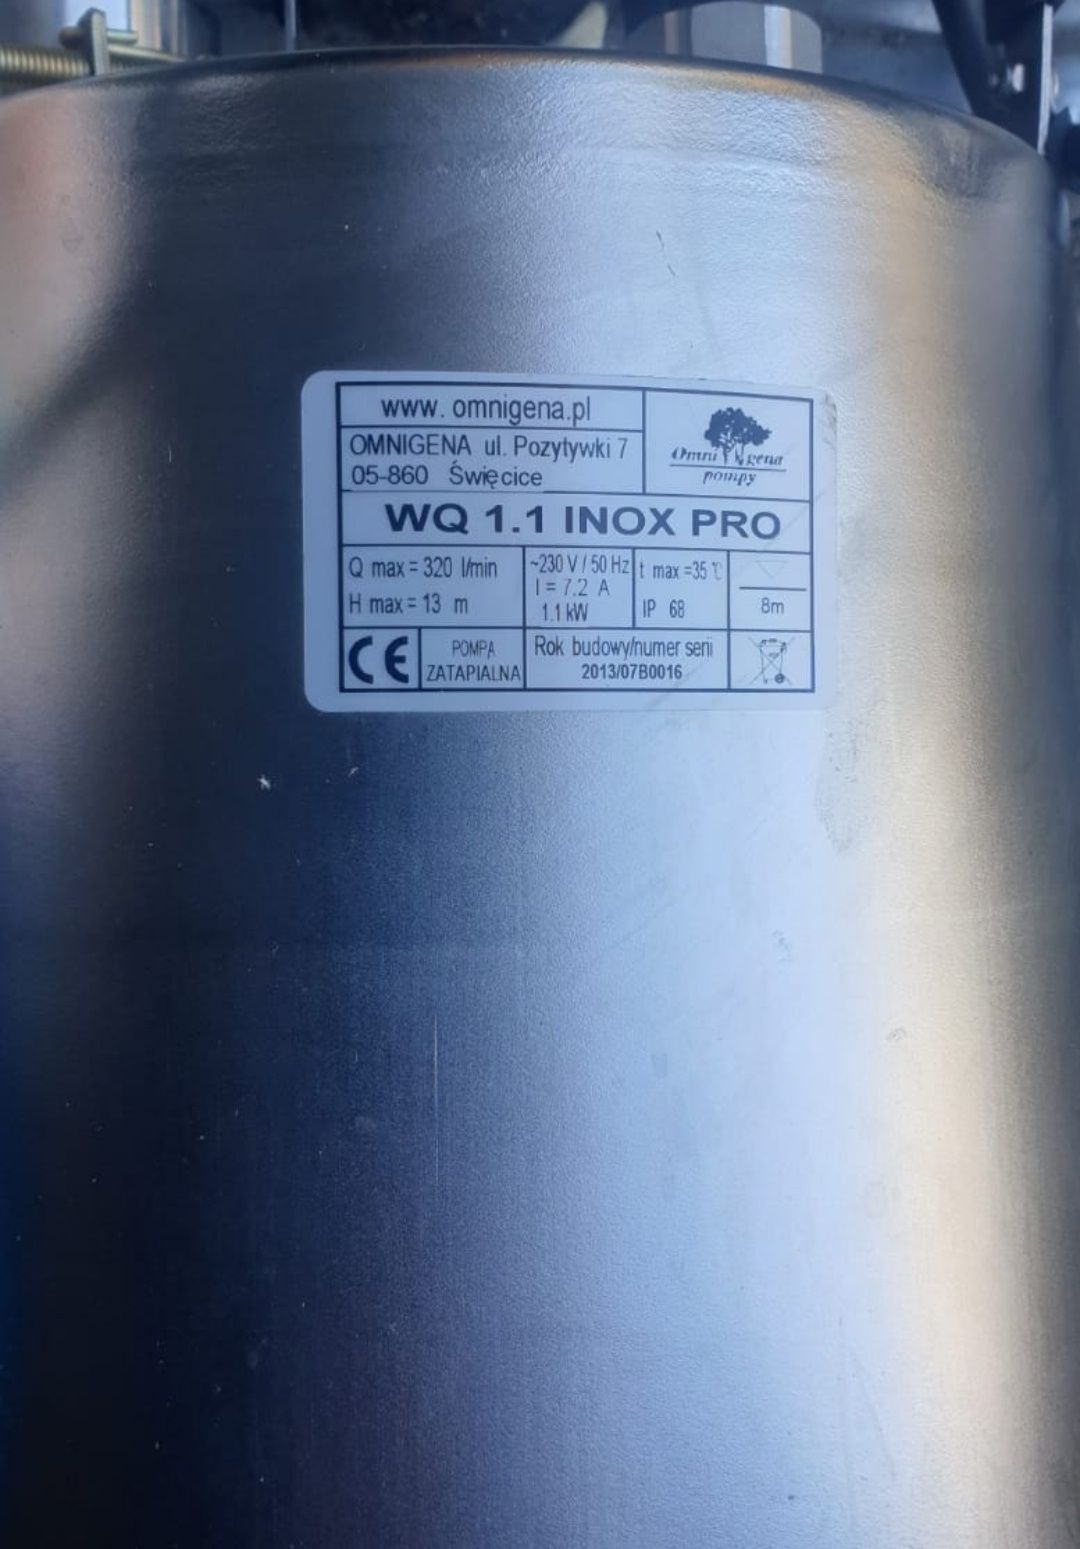 Pompa zatapialna W.Q 1.1 INOX PRO